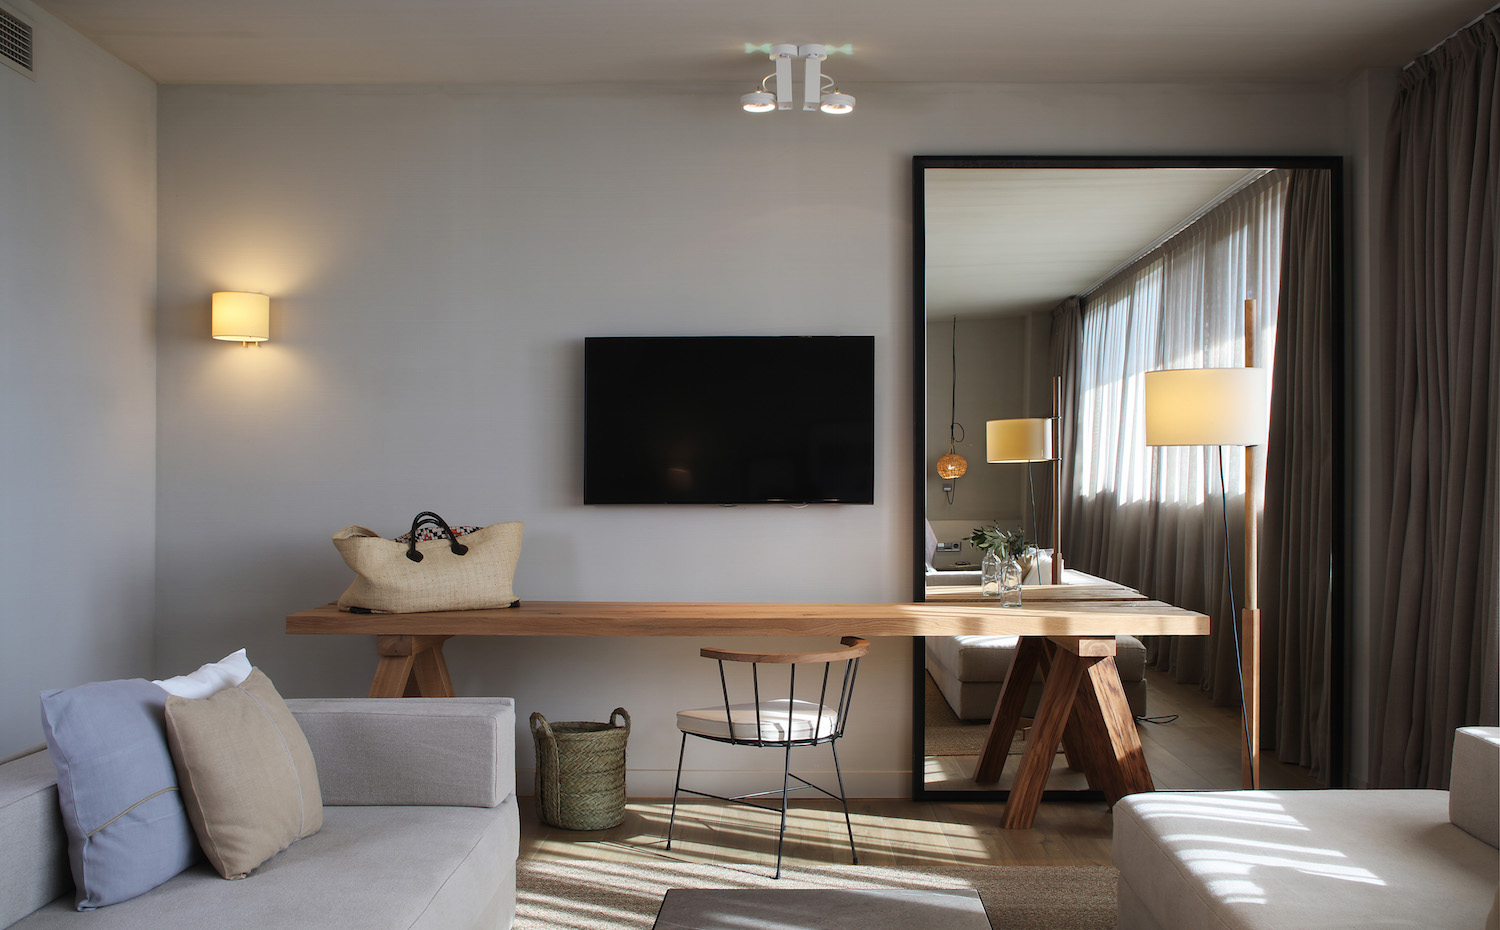 PERALADA (21). Las sencillas líneas de las habitaciones crean una atmósfera relajada, propia de la estética nórdica